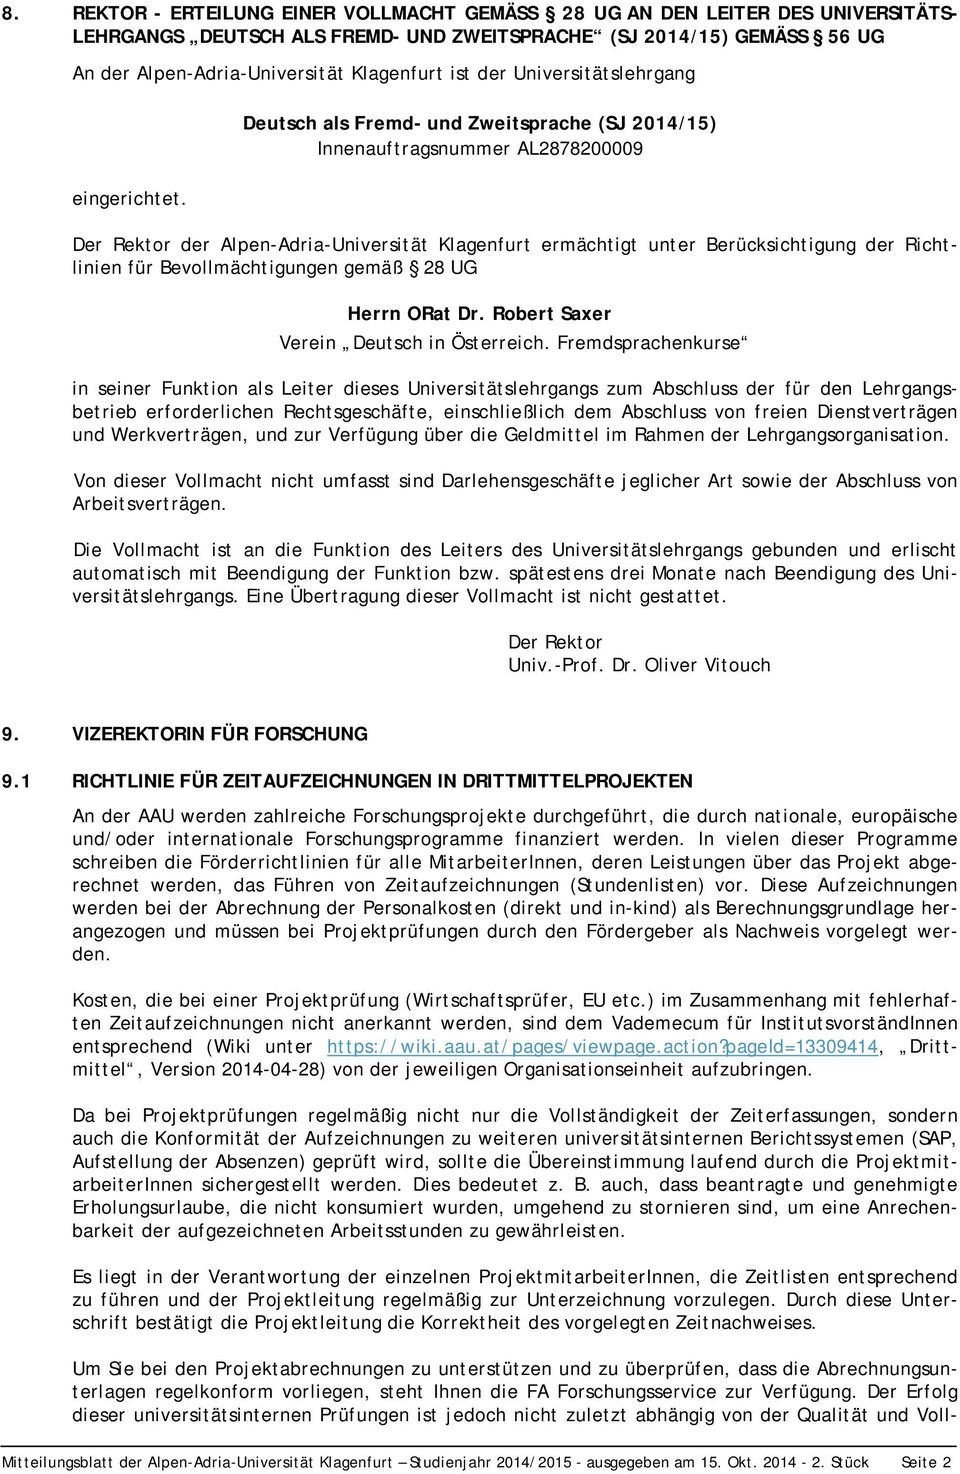 Der Rektor der Alpen-Adria-Universität Klagenfurt ermächtigt unter Berücksichtigung der Richtlinien für Bevollmächtigungen gemäß 28 UG Herrn ORat Dr. Robert Saxer Verein Deutsch in Österreich.